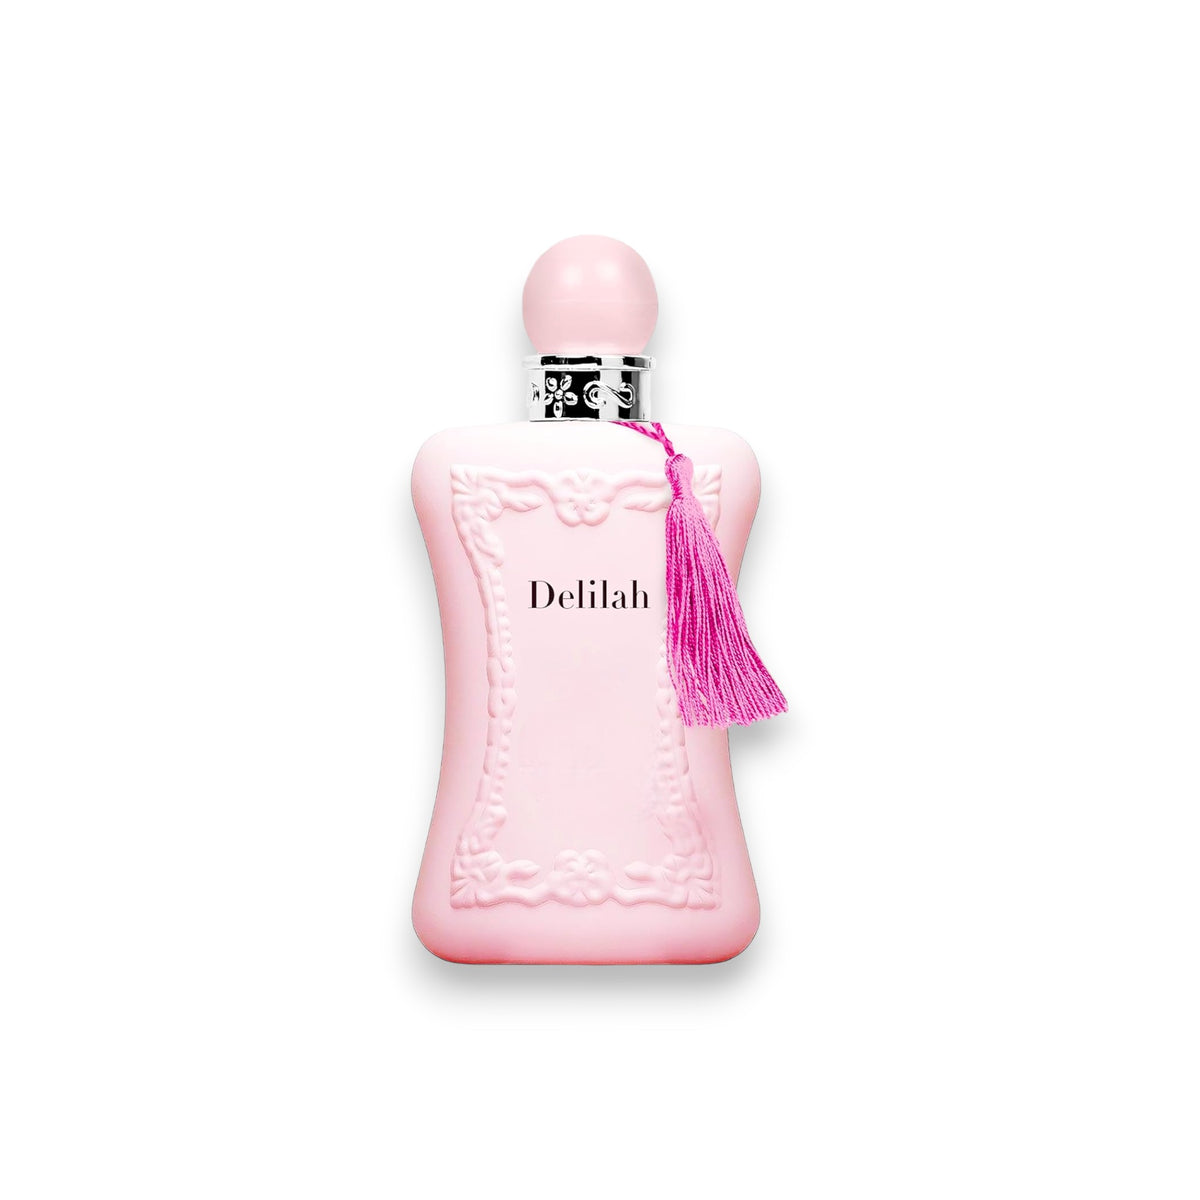 Delilah Perfume Eau de Parfum for Women 3.4 Oz.